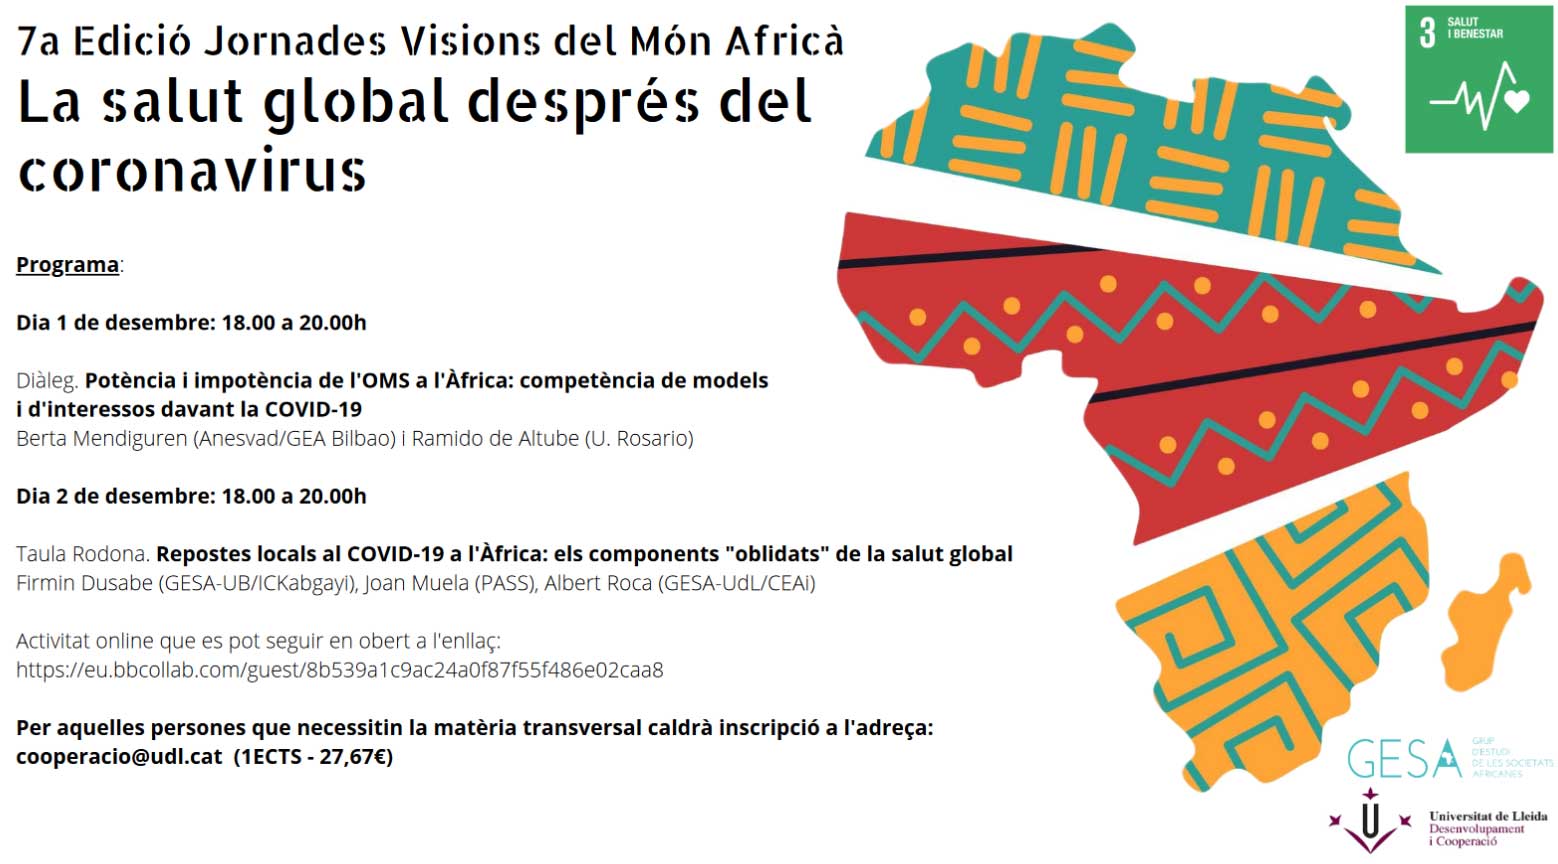 7es Jornades Visions del món d'Àfrica: La salut global després del coronavirus